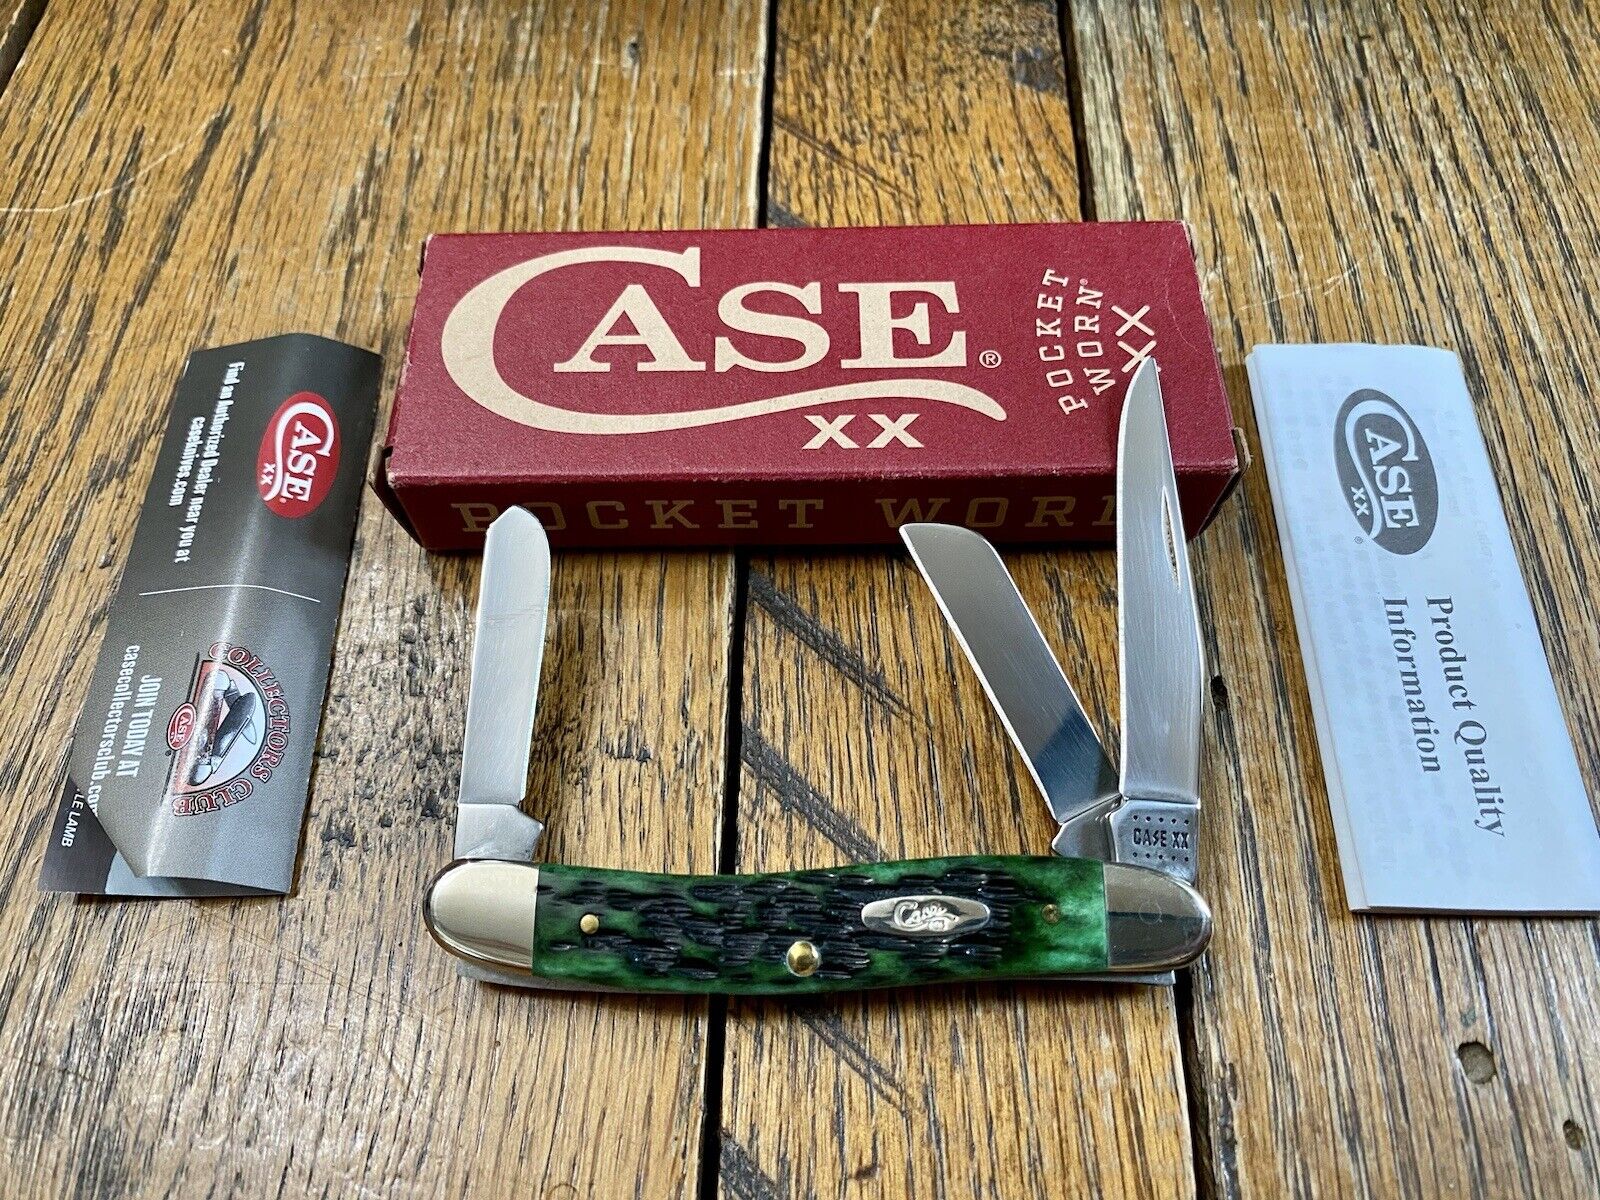 Bundle of (3) NOS BRAND NEW CASE Vintage Pocket Knives 1988-2020